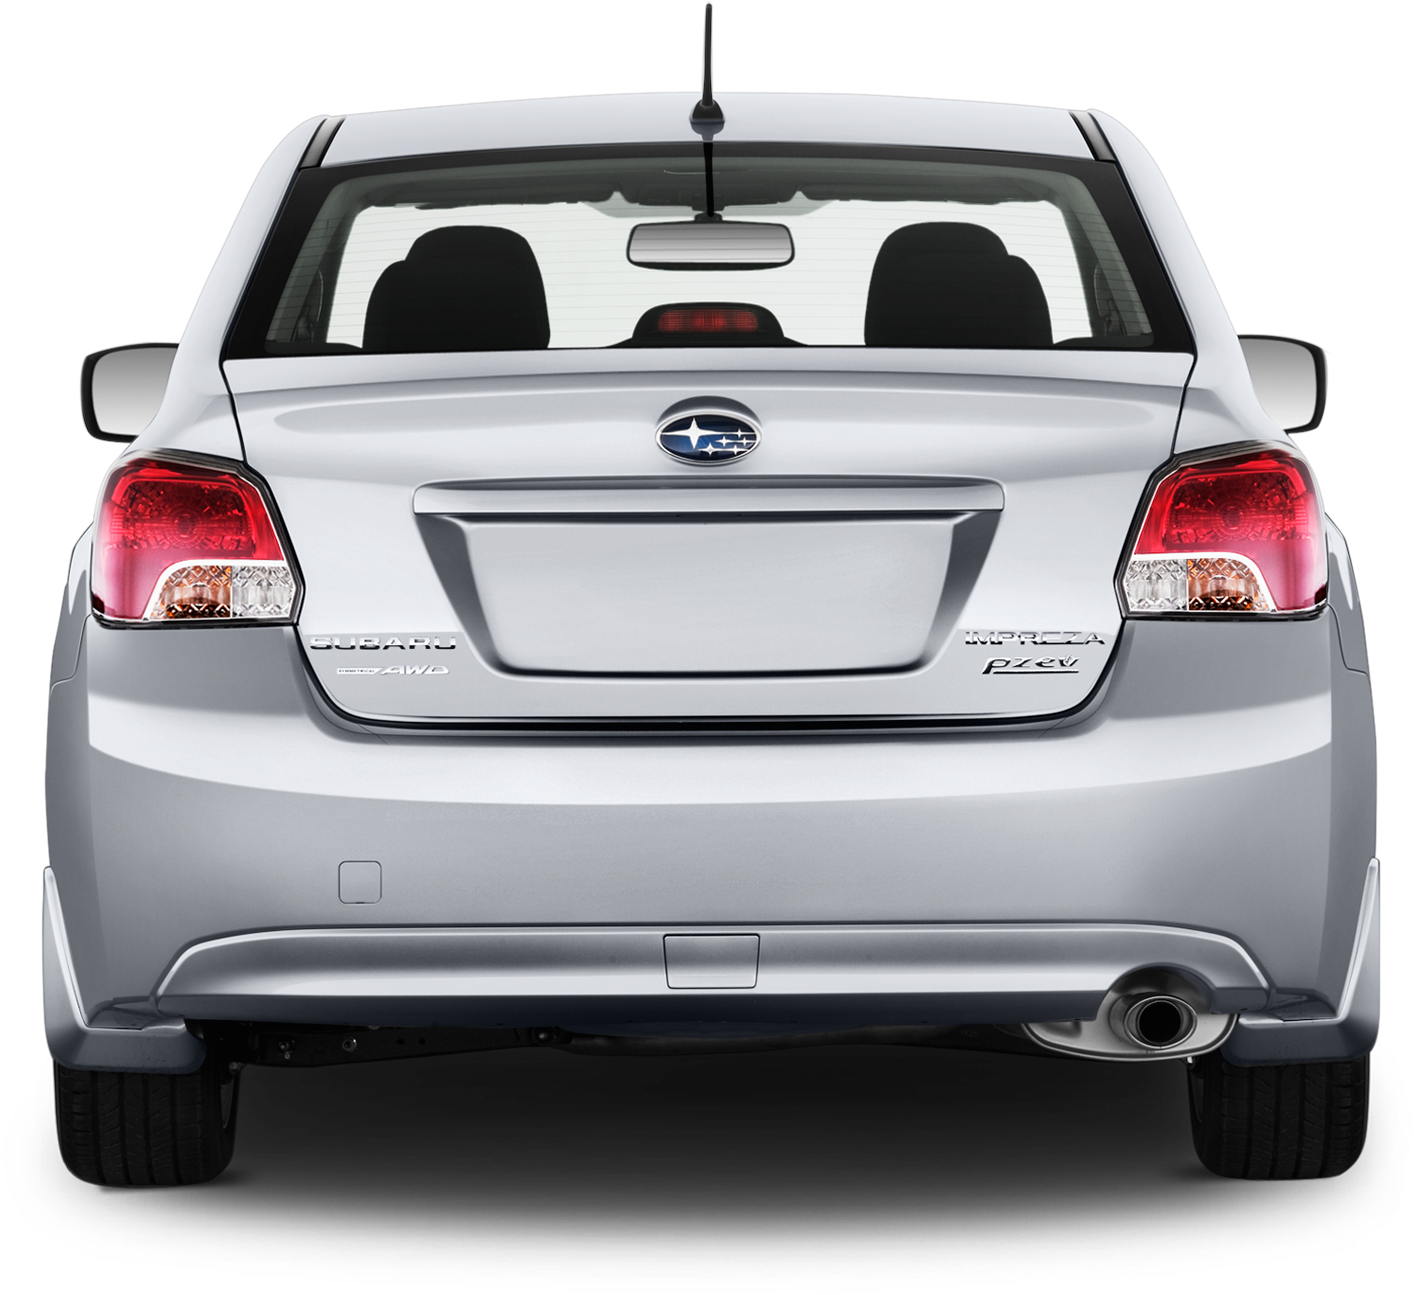 Subaru STi Transparent Image